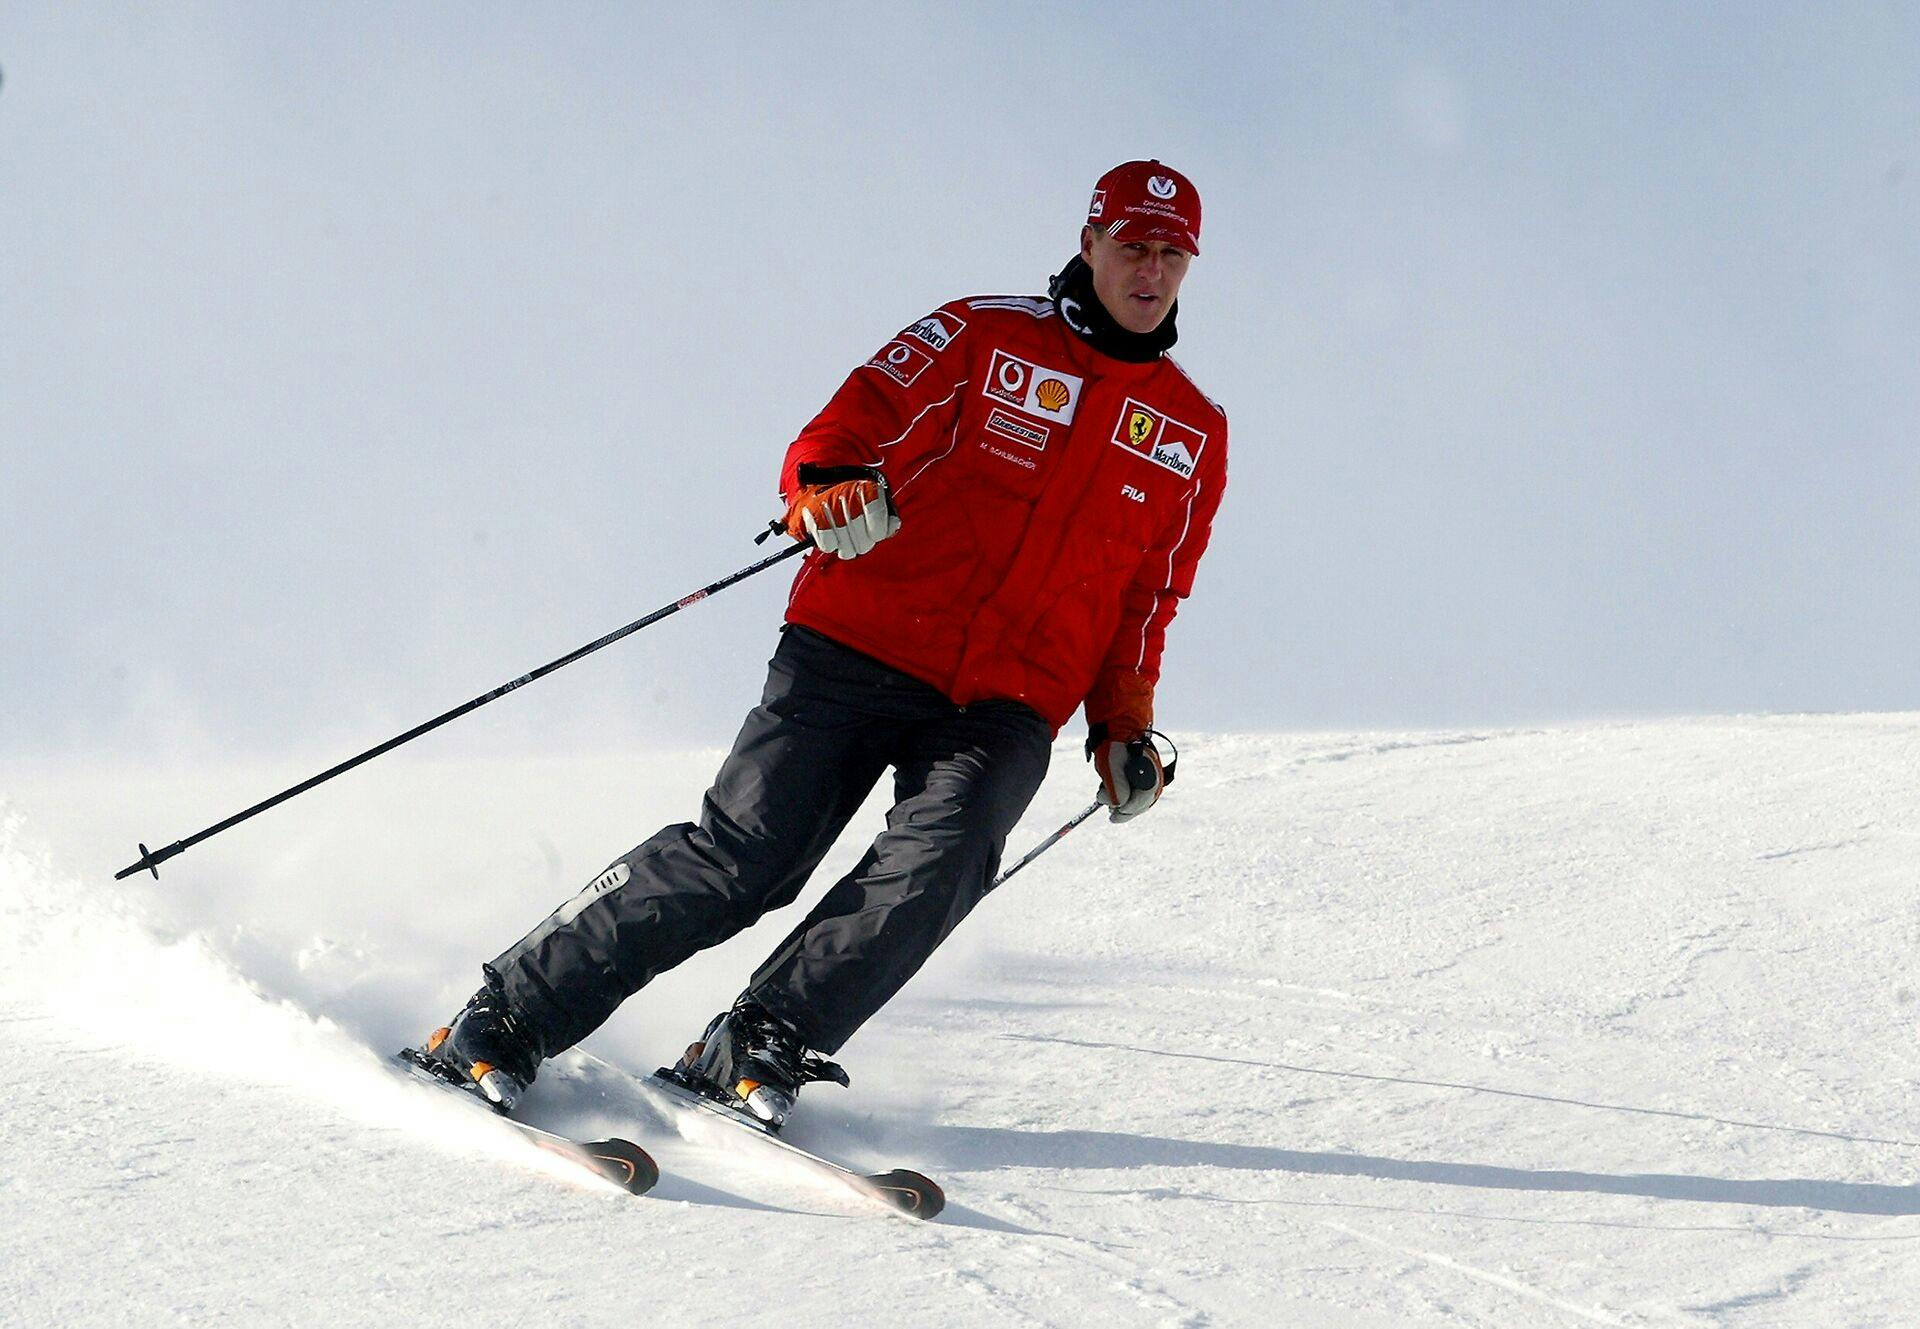 10 år efter ulykken er det stadig forbavsende lidt, som vi ved om Michael Schumachers tilstand. 